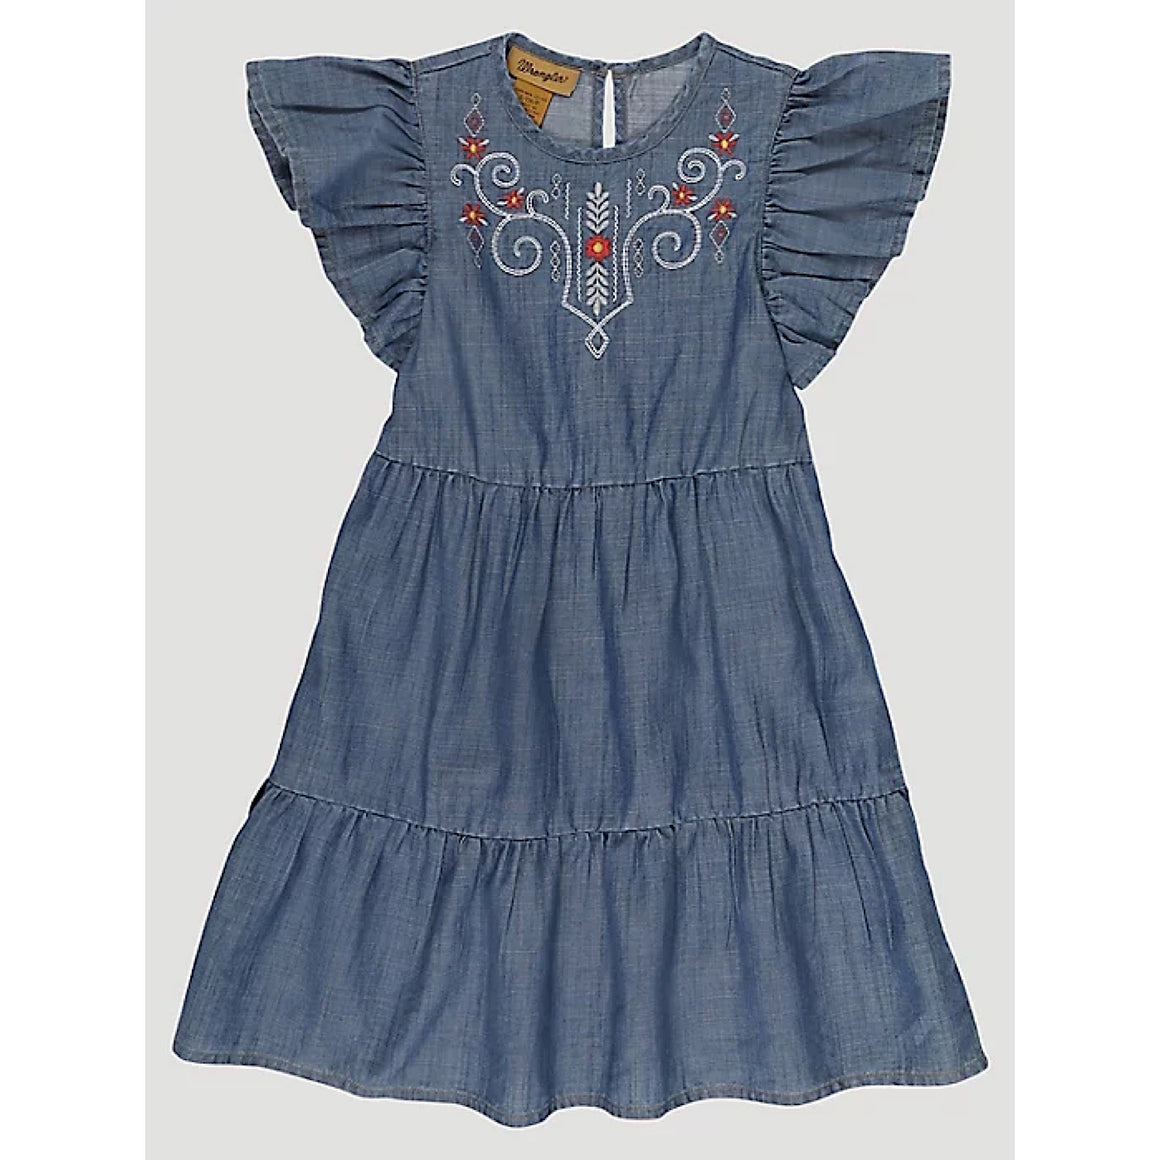 Wrangler Girls Ruffle Sleeve Embroidered Denim Dress in Blue Denim